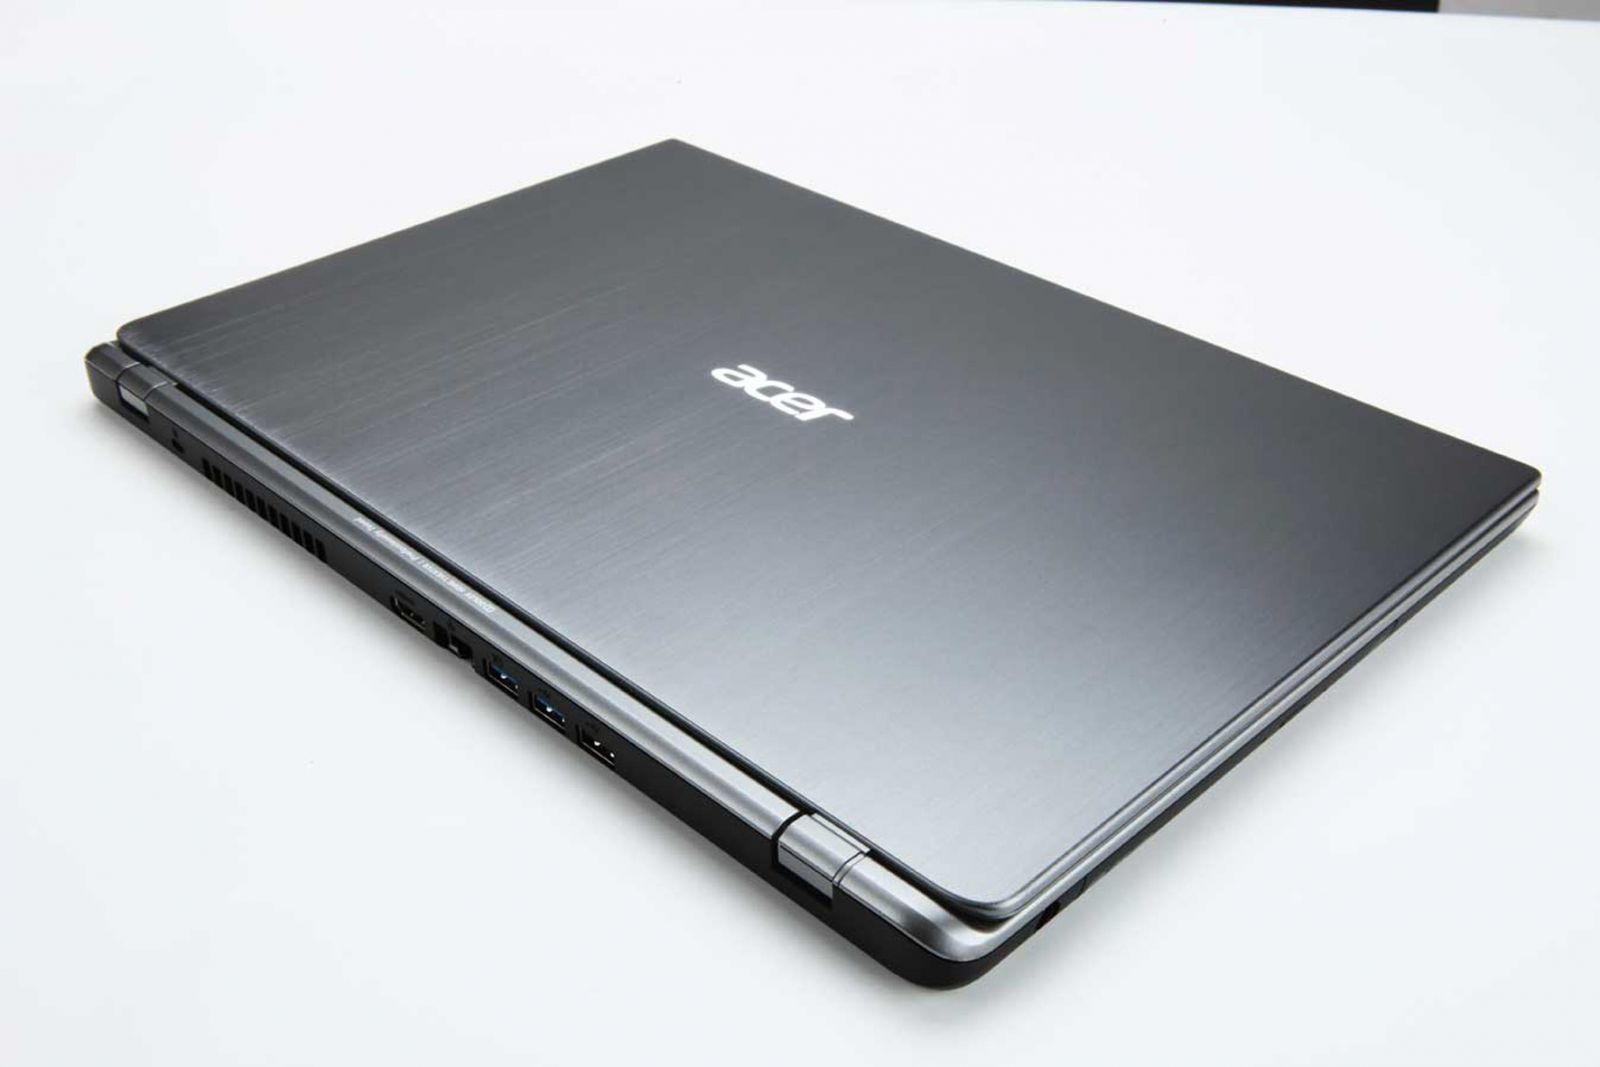 Acer aspire timeline ultra laptop